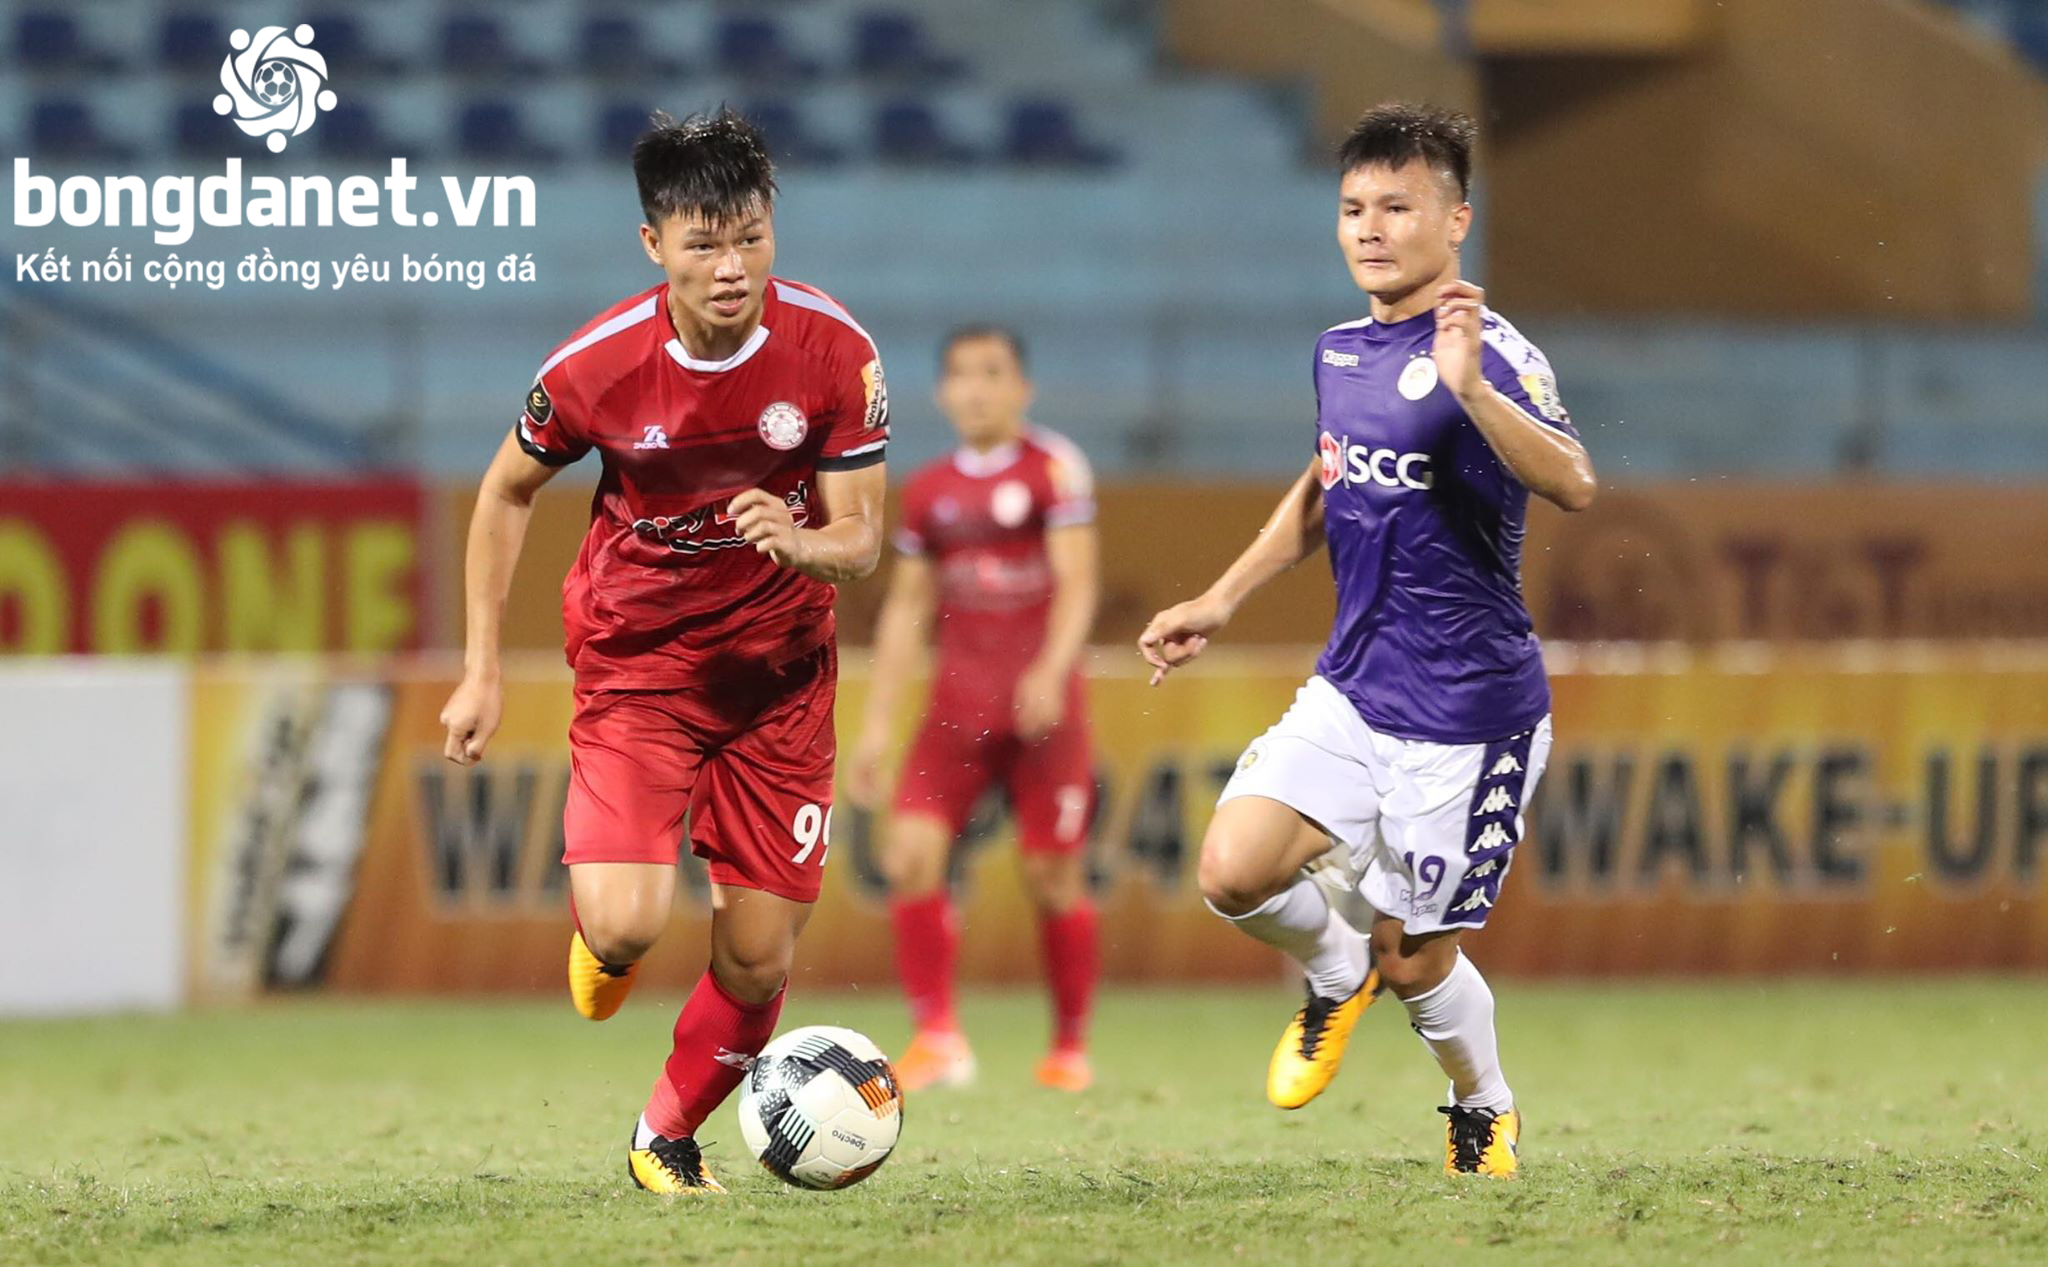 Lịch thi đấu bán kết Cúp Quốc gia Việt Nam 2019: Hà Nội vs TP.HCM